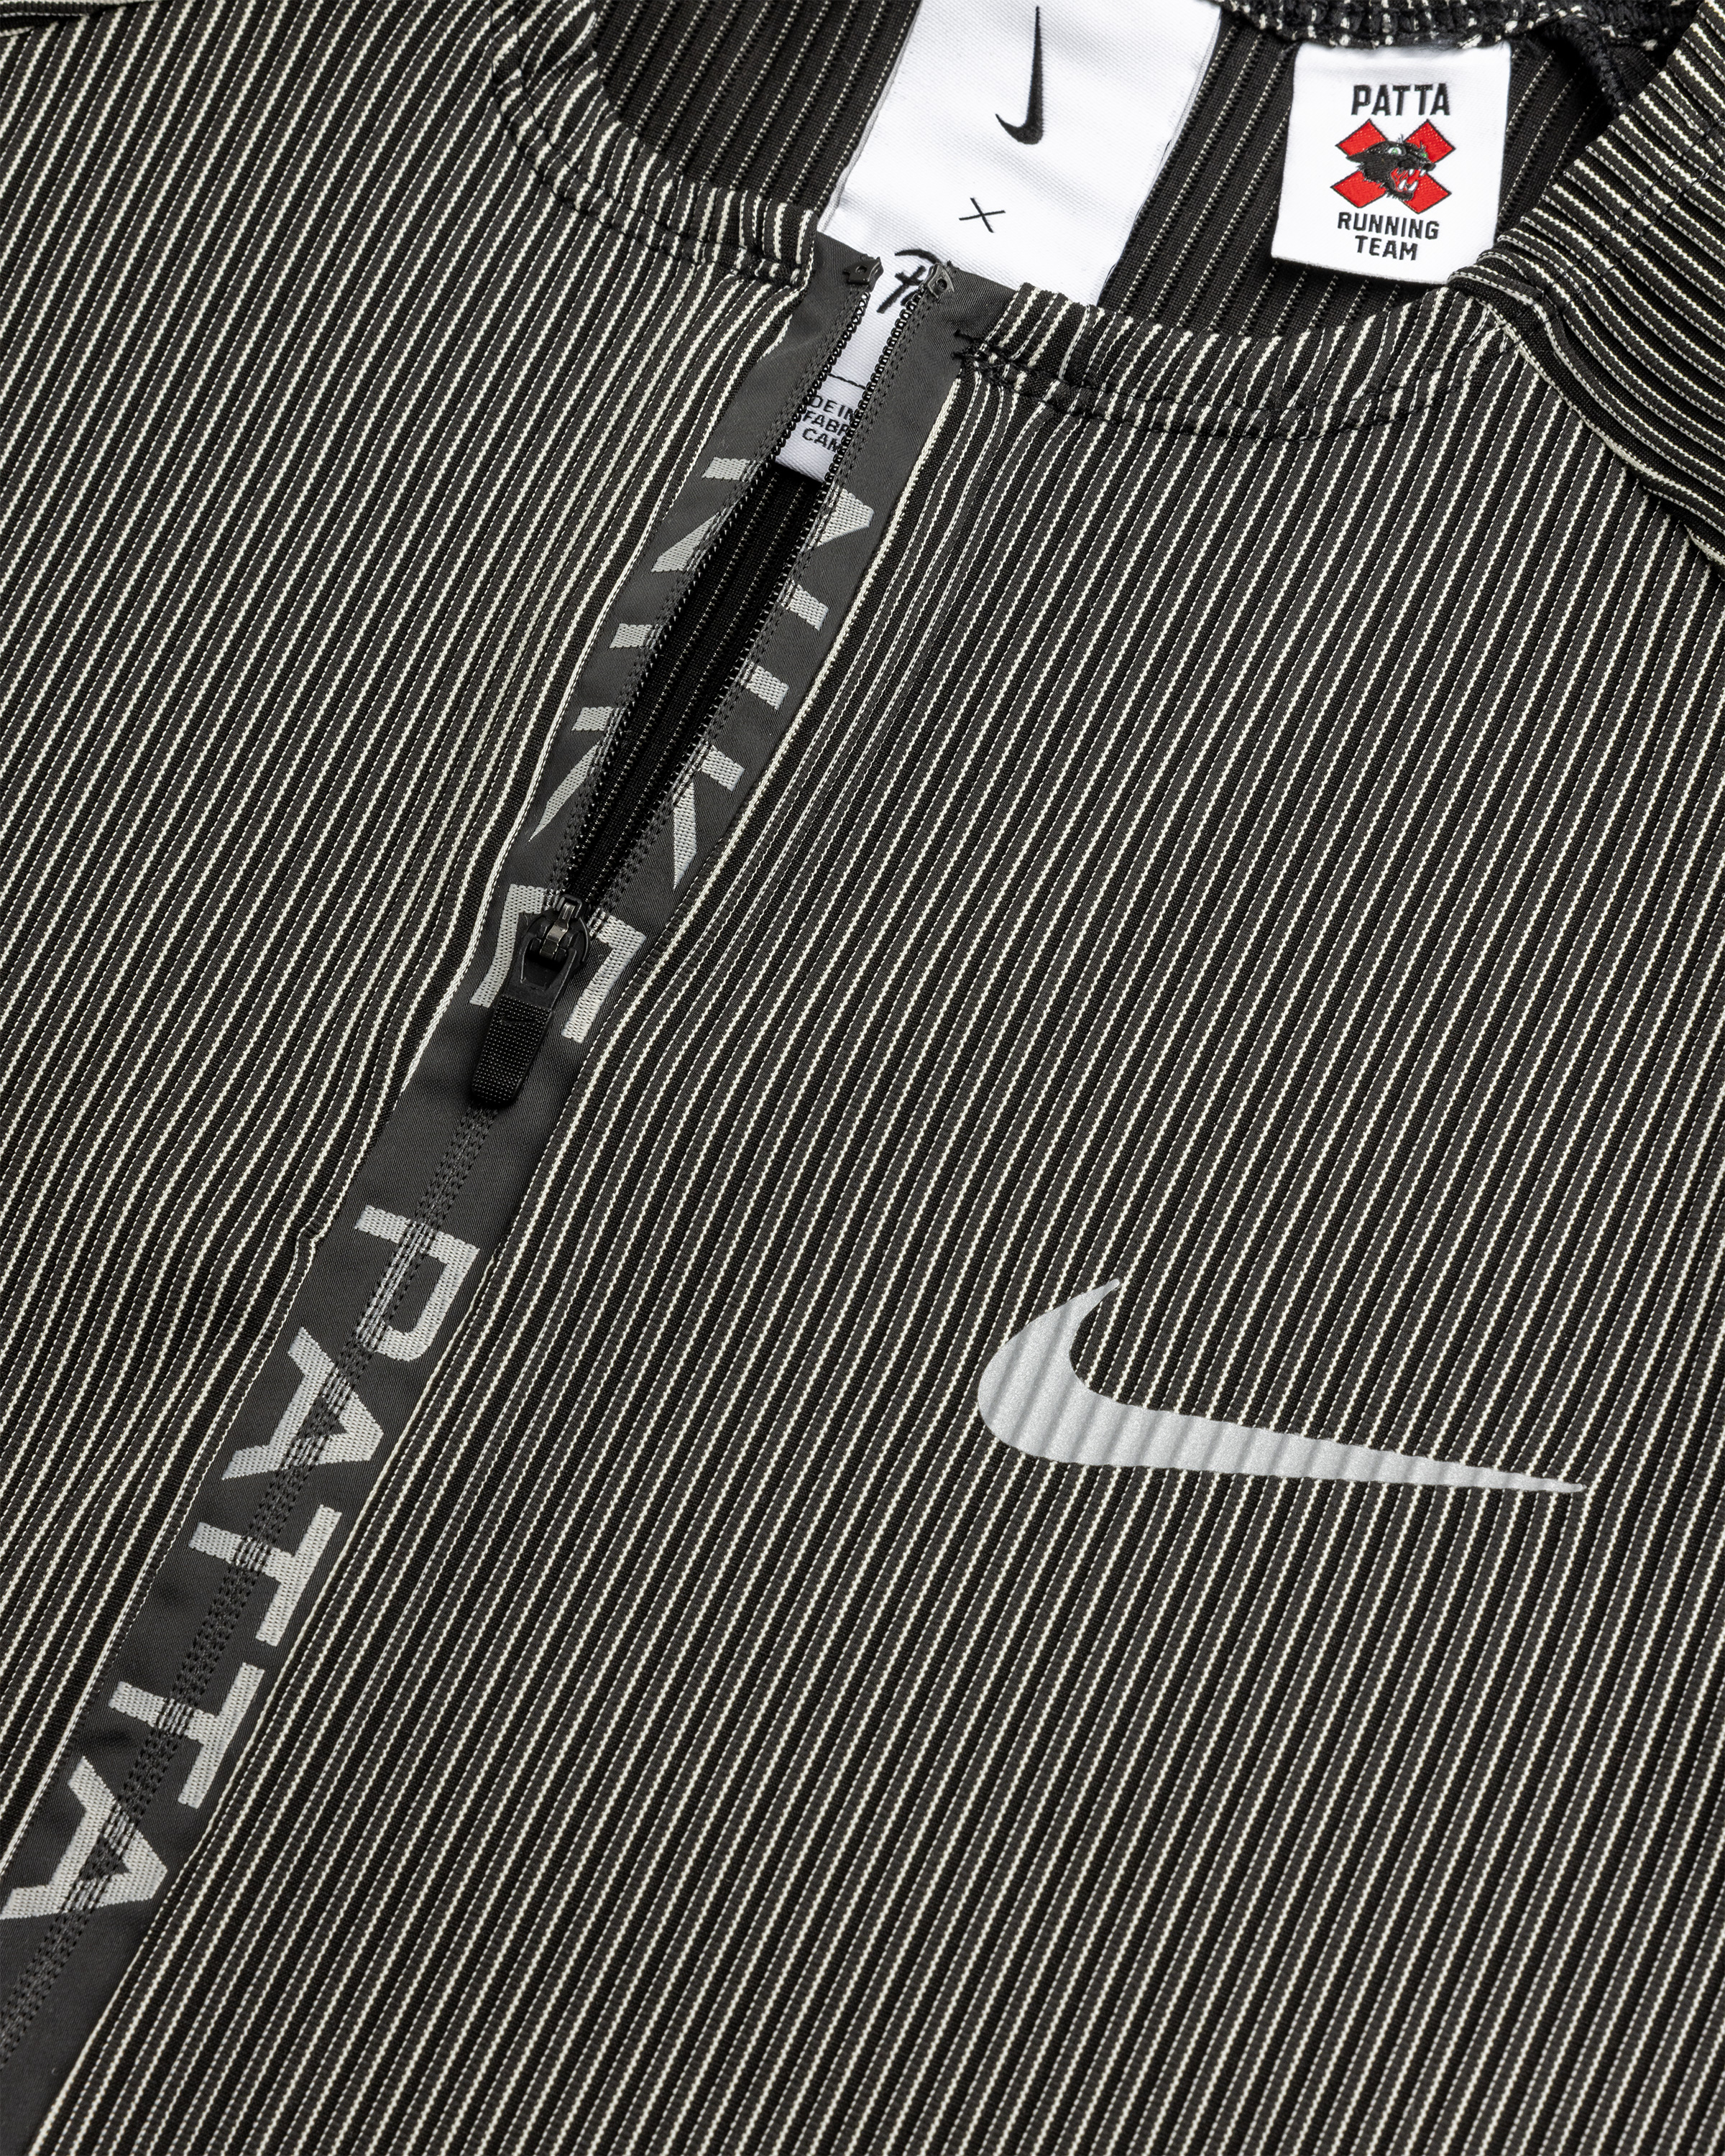 Nike x Patta – U NRG Nike x Patta Race Suit Black - Overshirt - Black - Image 9